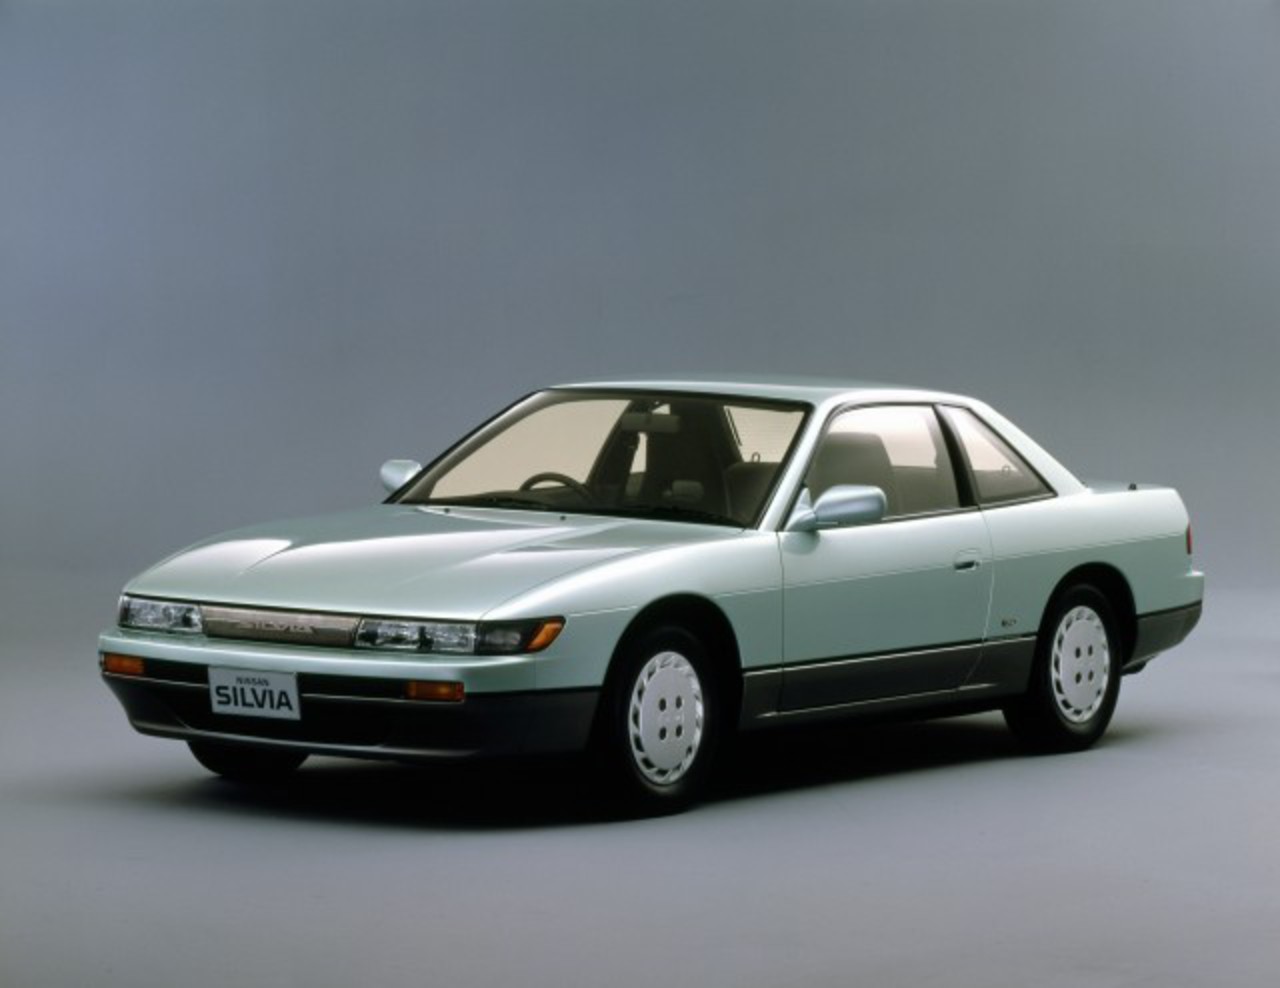 Nissan - Silvia-QS. Nous sommes en 2013, et cela signifie qu'une nouvelle gamme de véhicules a